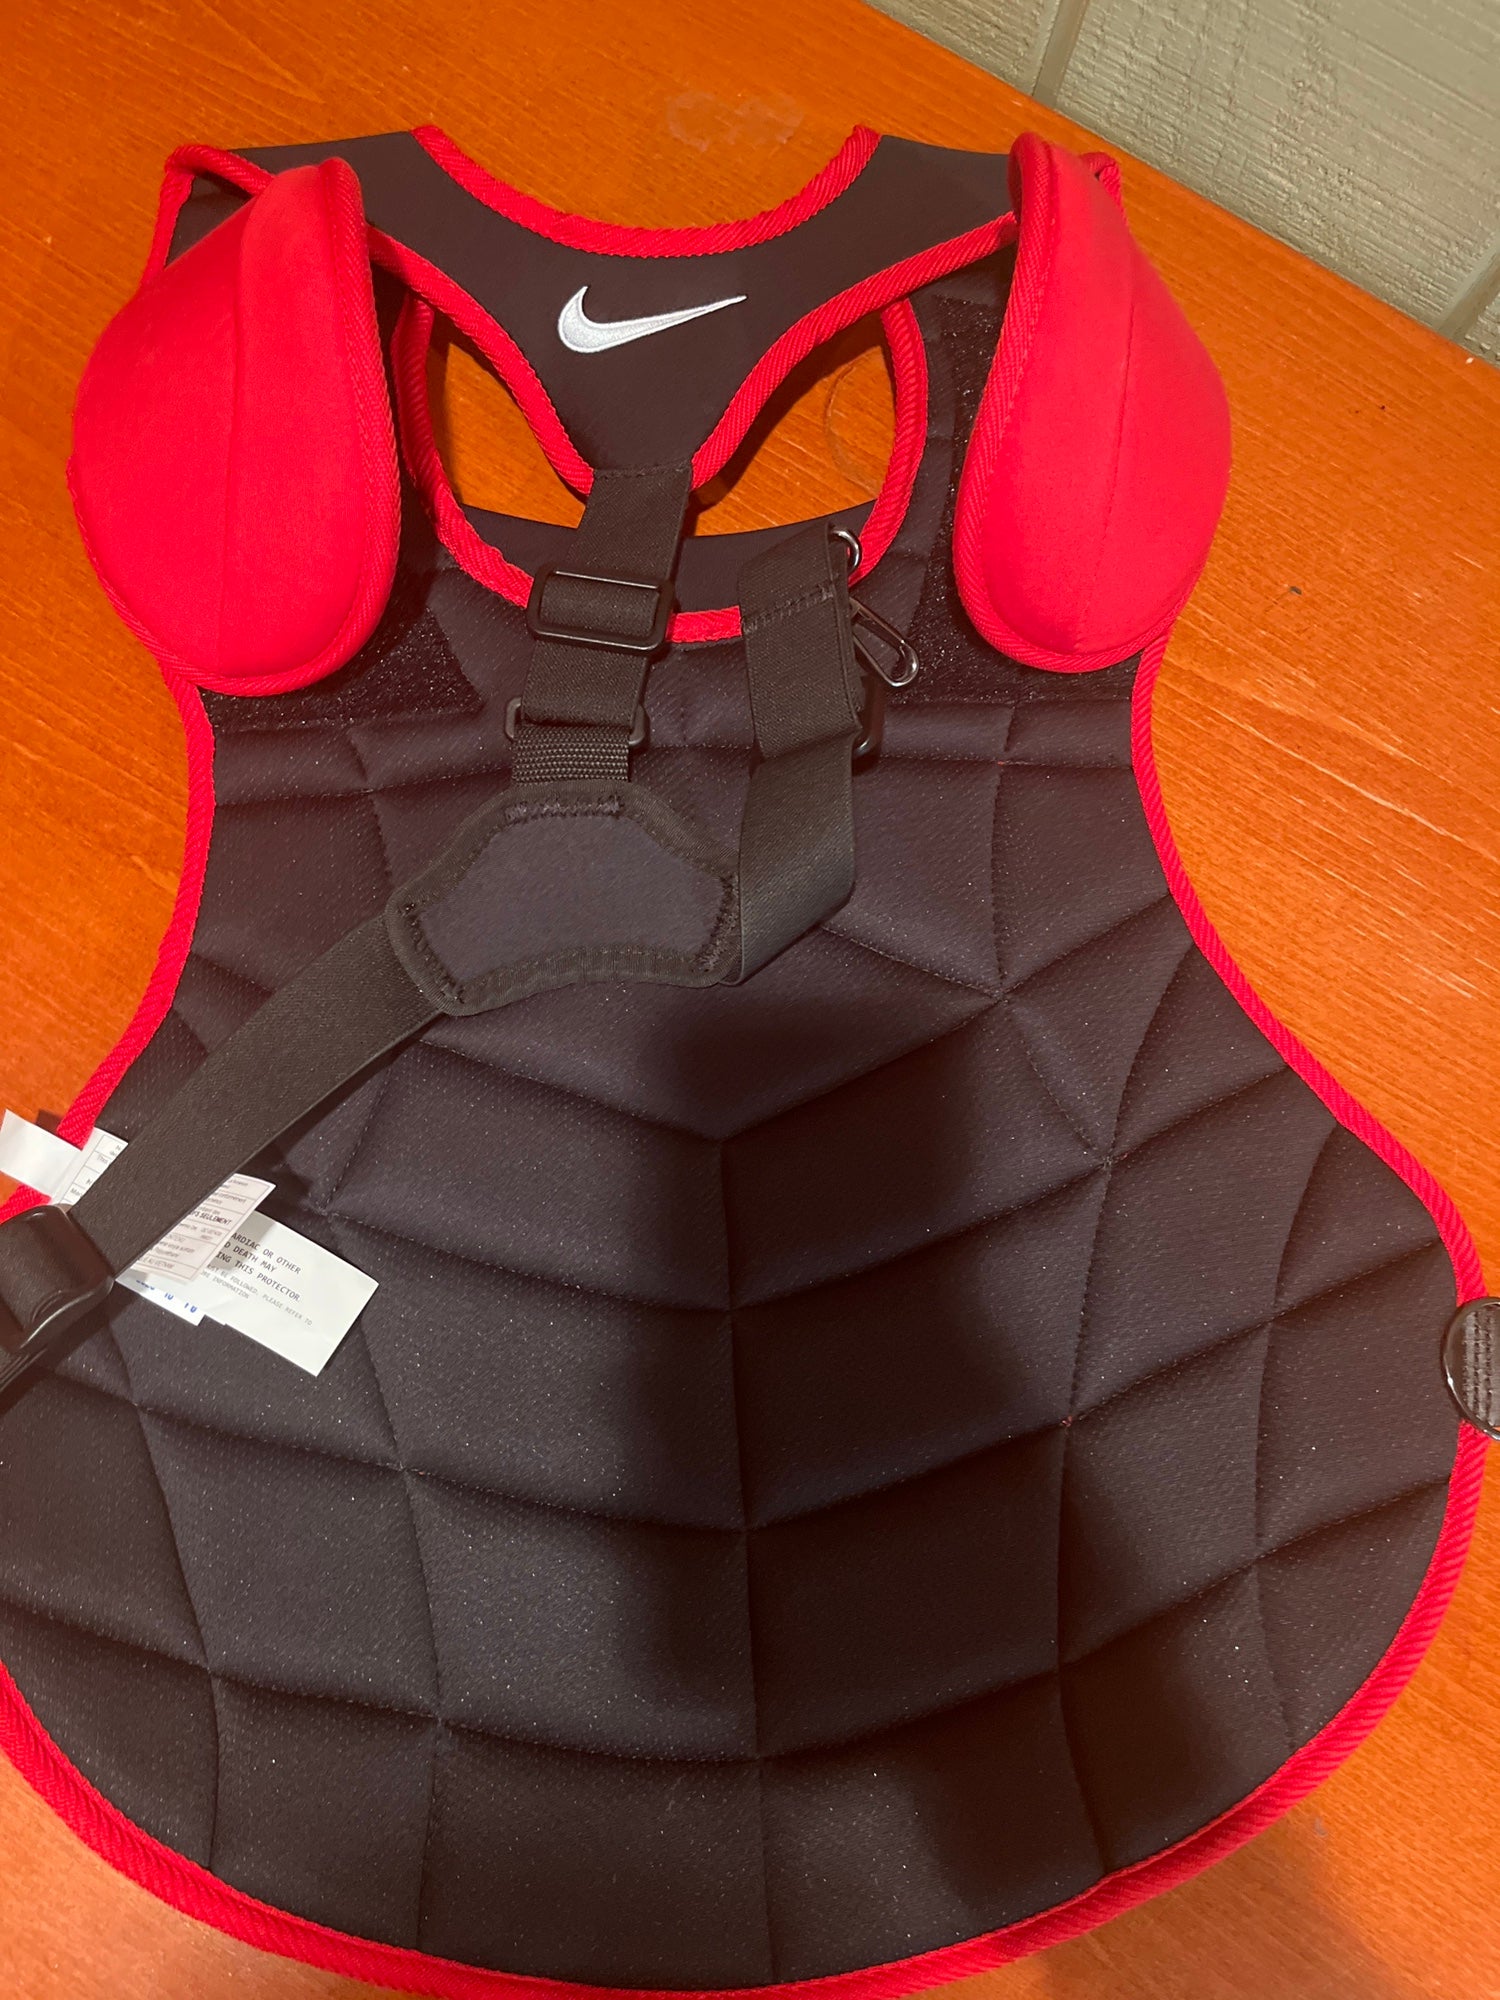 Nike Vapor Catcher Chest Protector Gear Men Red/Black/White 18"